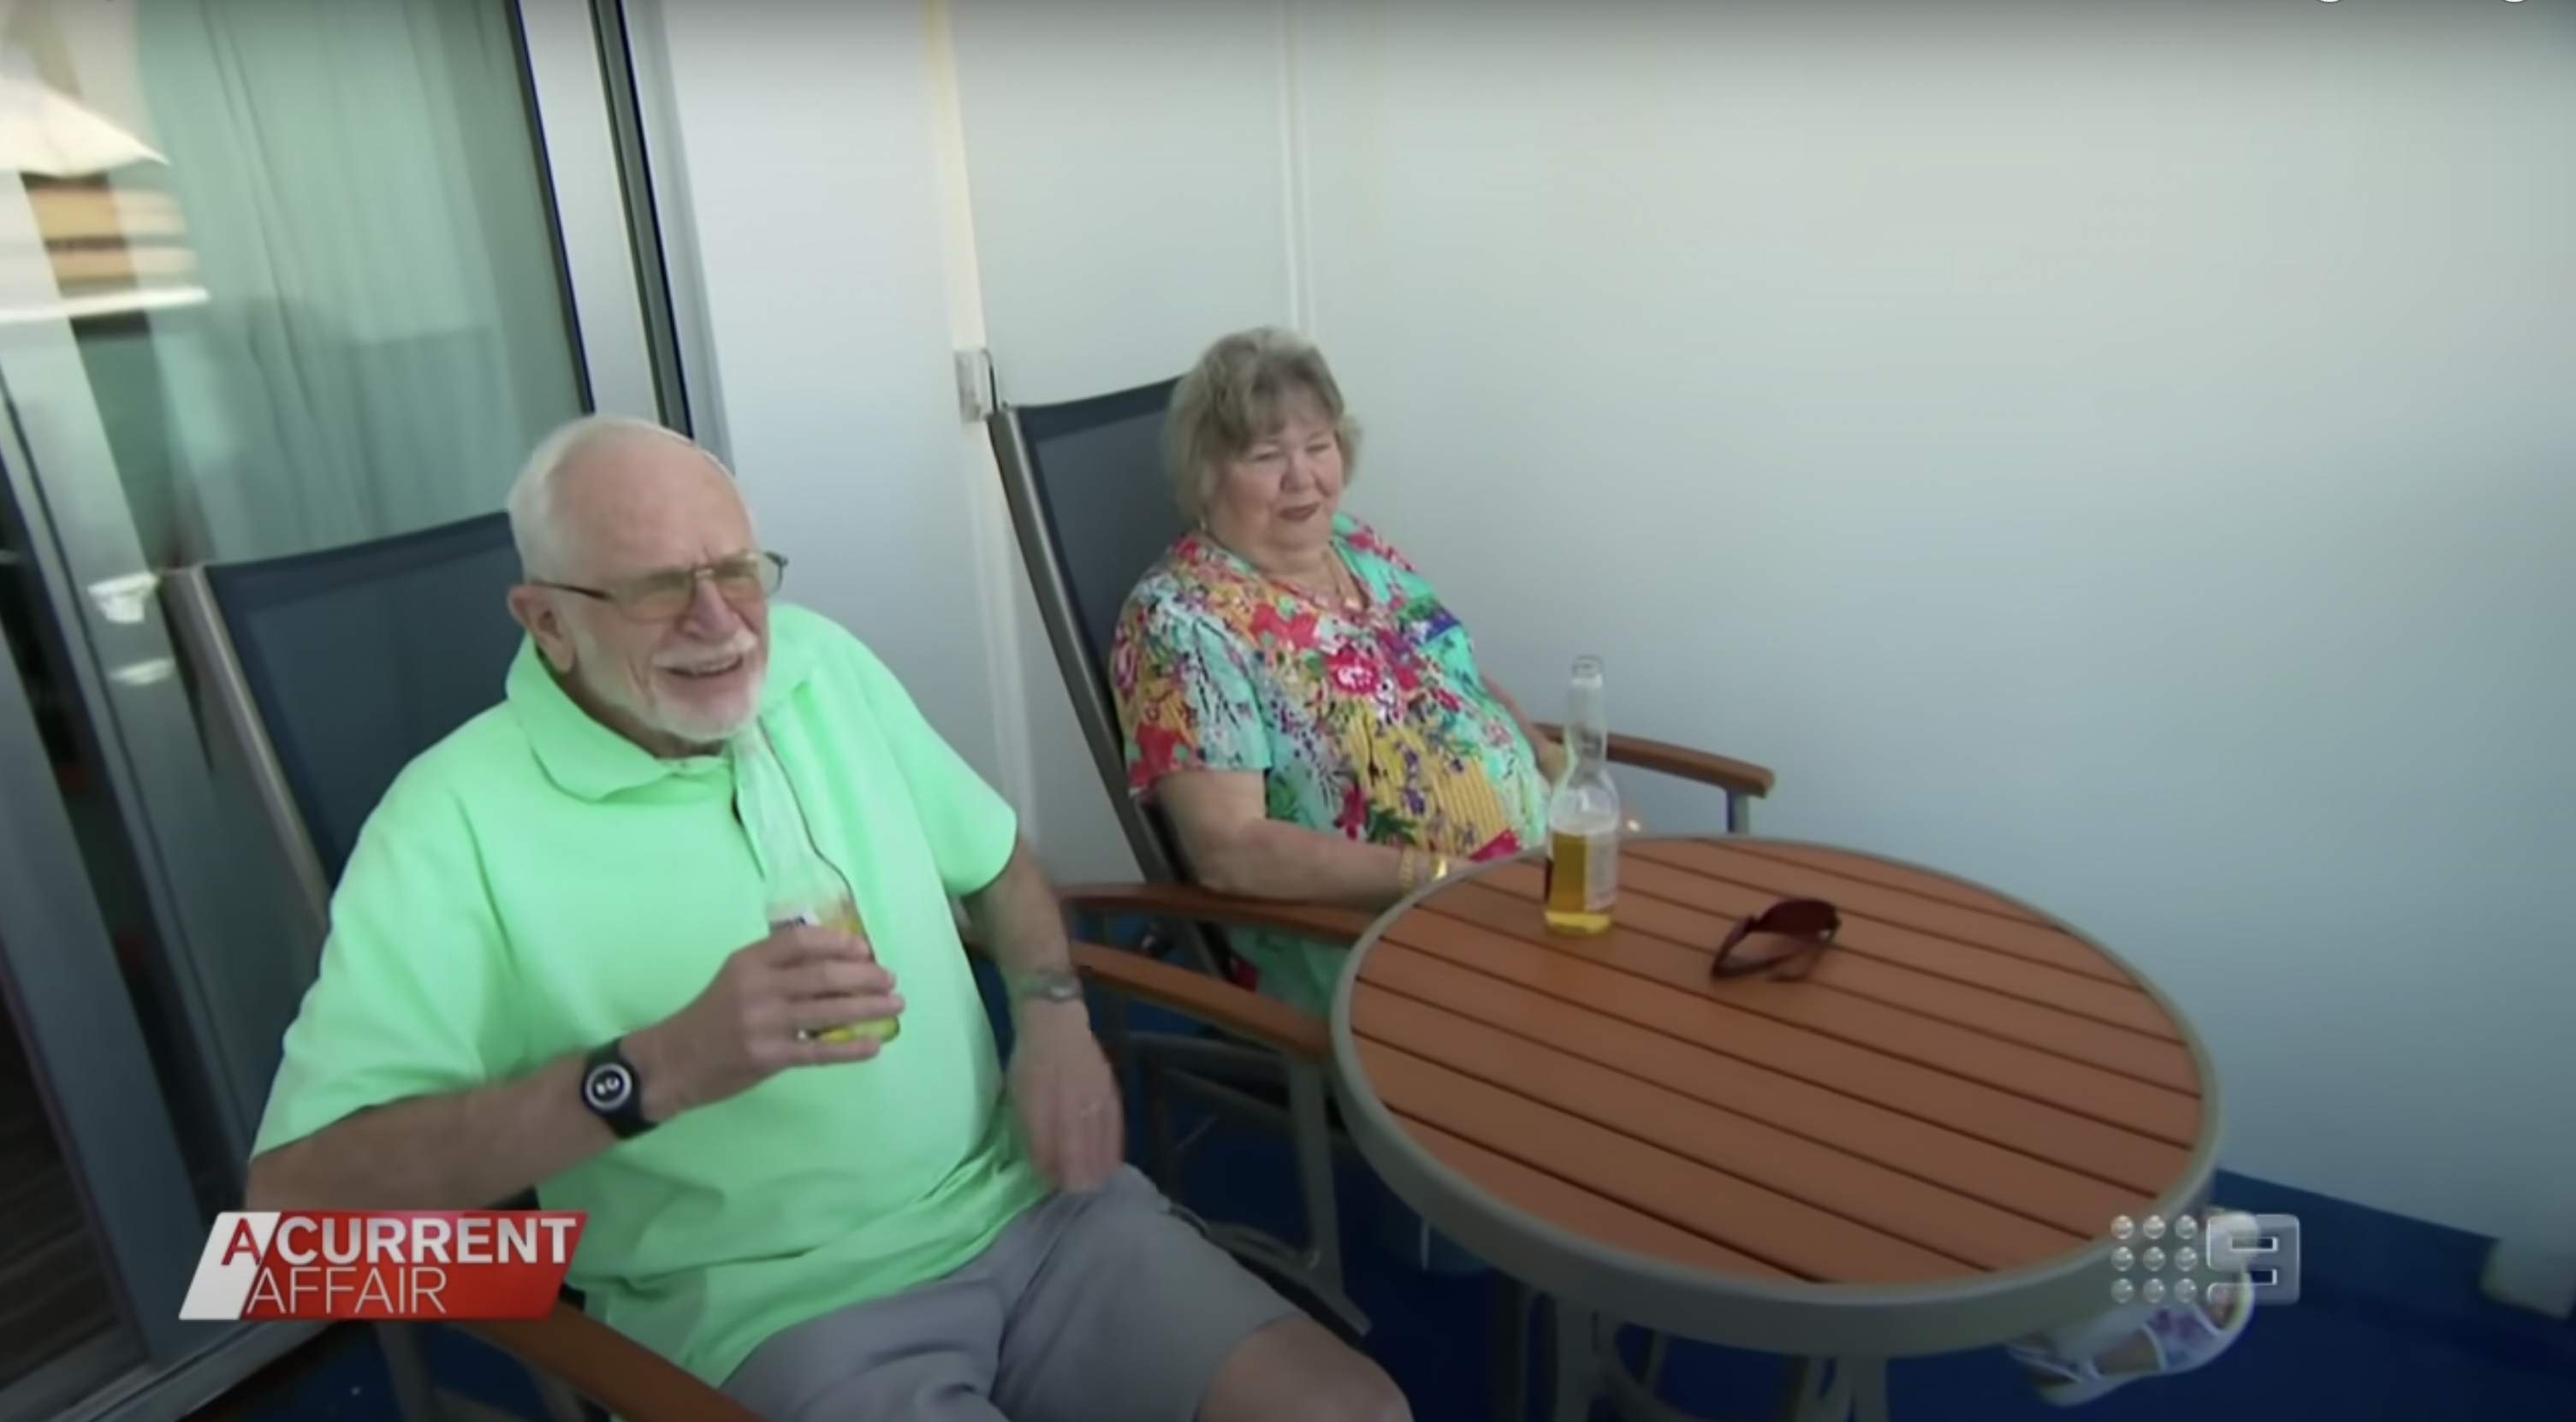 Marty y Jess Ansen en un crucero. | Fuente: YouTube/ACurrentAffair